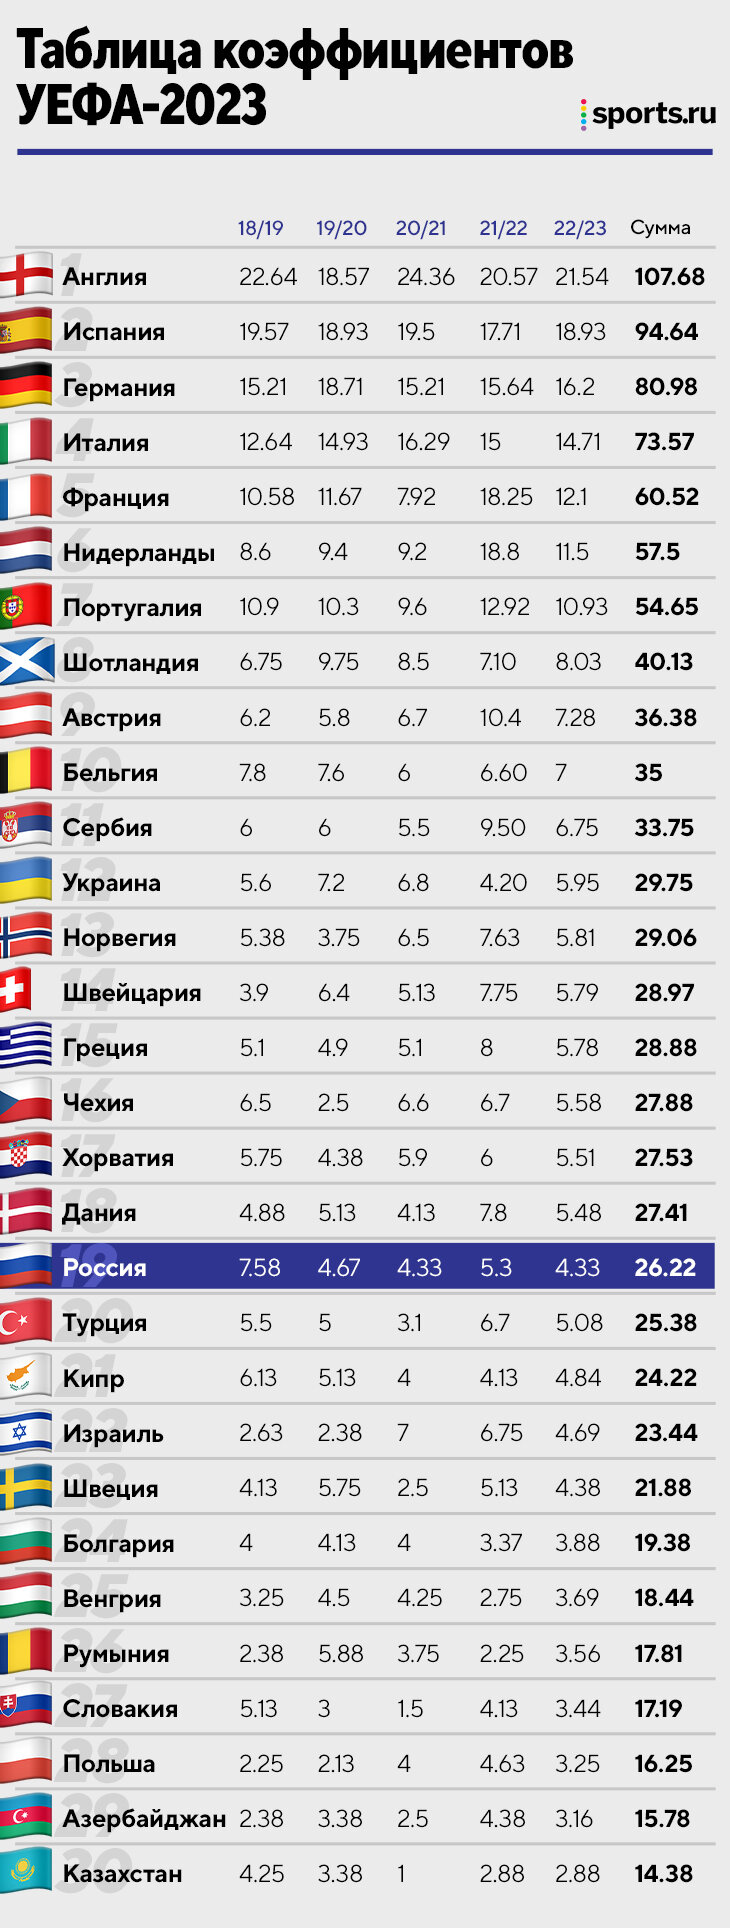 Россия теперь провалится в таблице коэффициентов? Да, но не из-за решений УЕФА